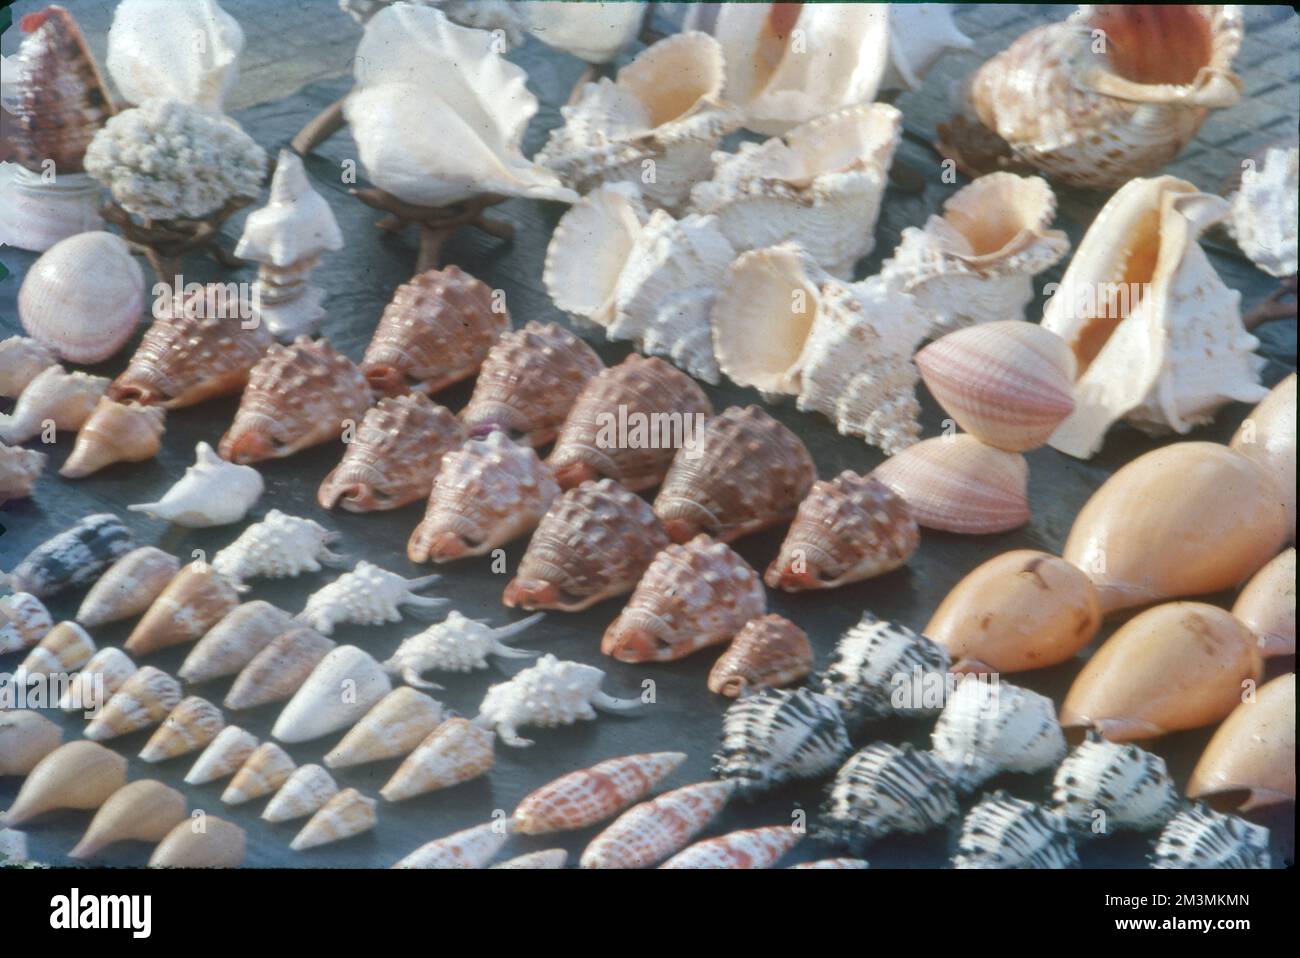 Les coquilles de mollusques marins qui sont familières aux membres de la plage et qui sont donc les plus susceptibles d'être appelées « coquillages » sont les coquilles d'espèces marines de bivalves (ou palourdes), de gastéropodes (ou escargots), de scaphodes (ou coquilles de tusk), de polyplacophorans (ou chitons) et de céphalopodes (comme nautilus et spirula). Banque D'Images